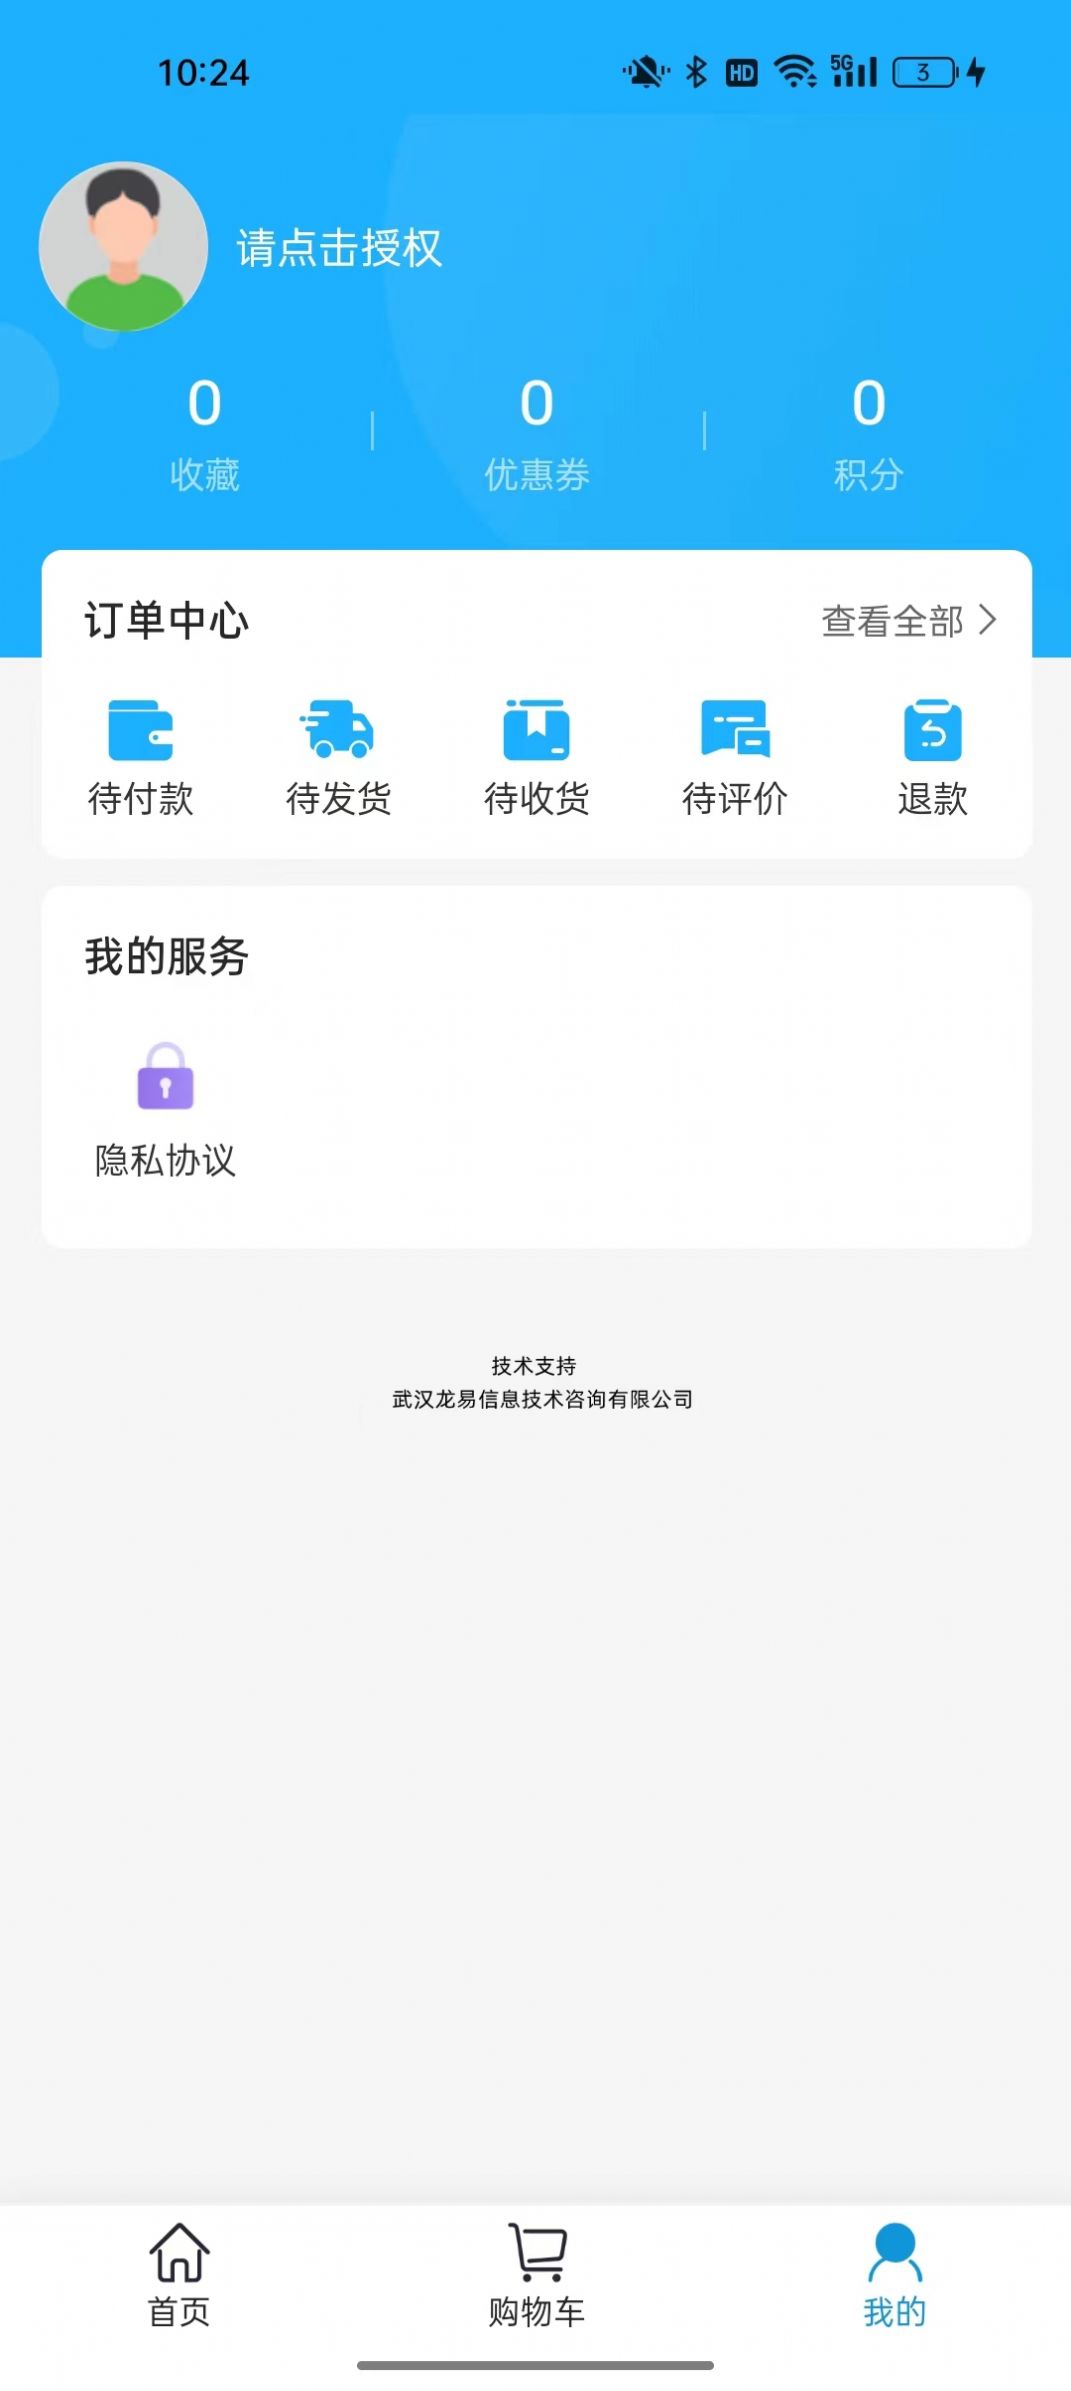 龙易商城app官方手机版图片1